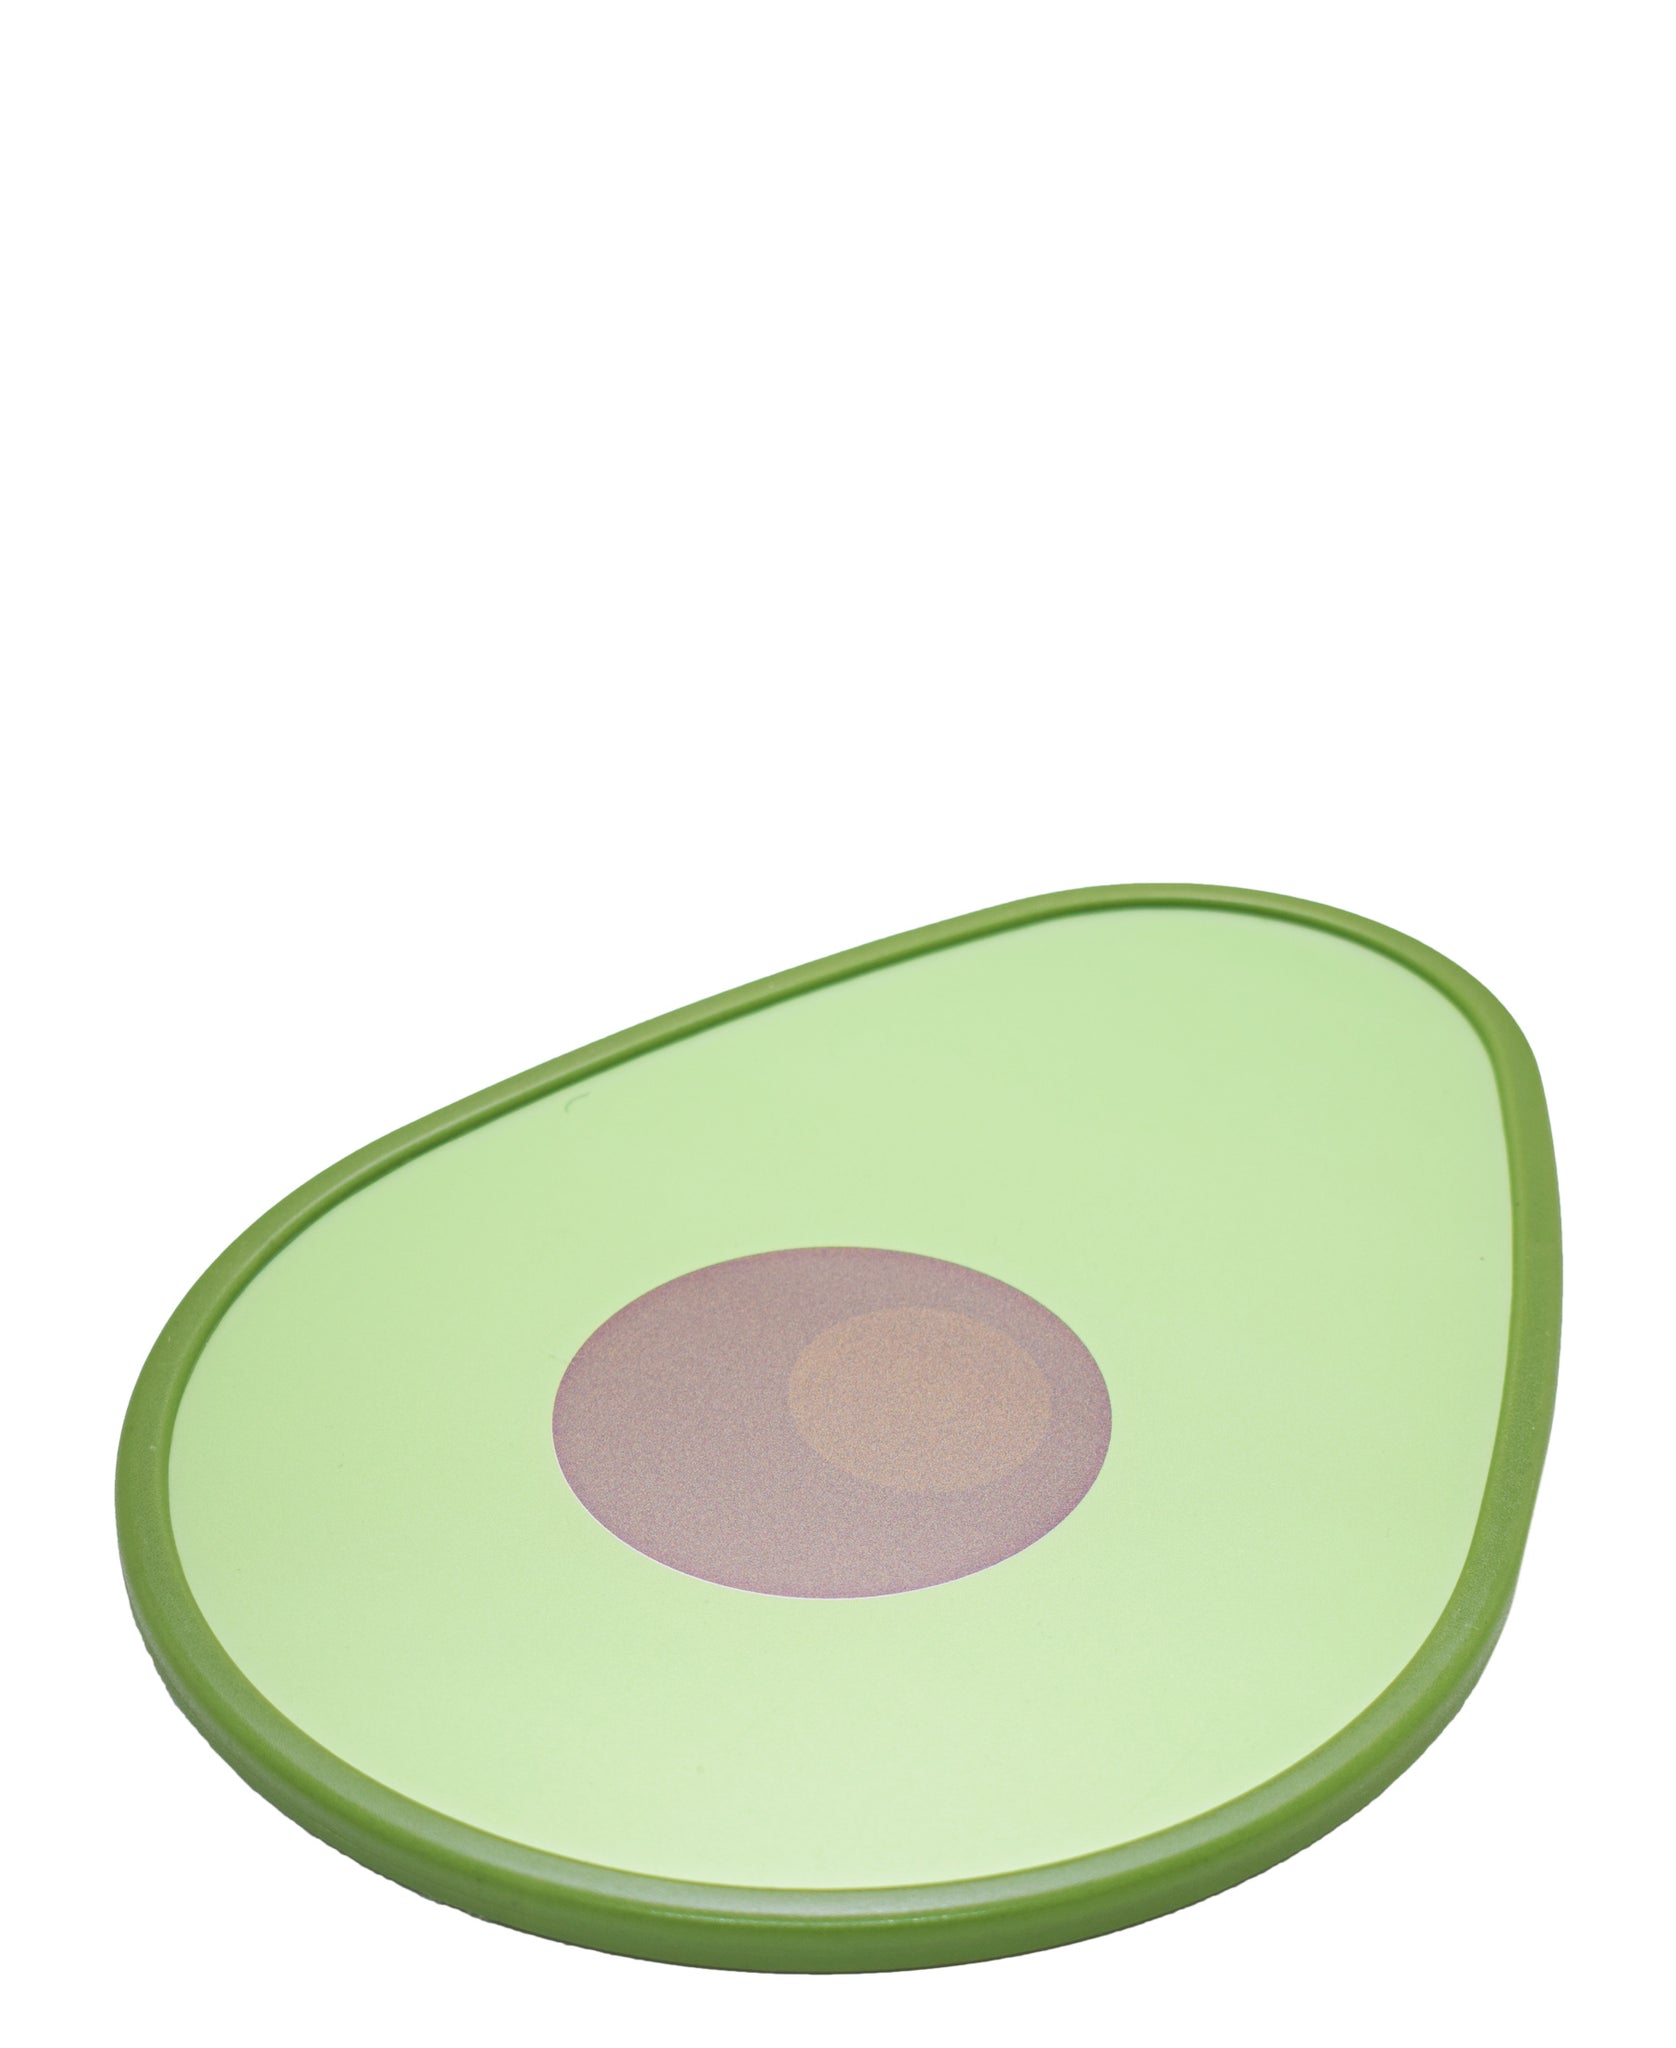 Joie Msc Avocado Cutting Board - Green